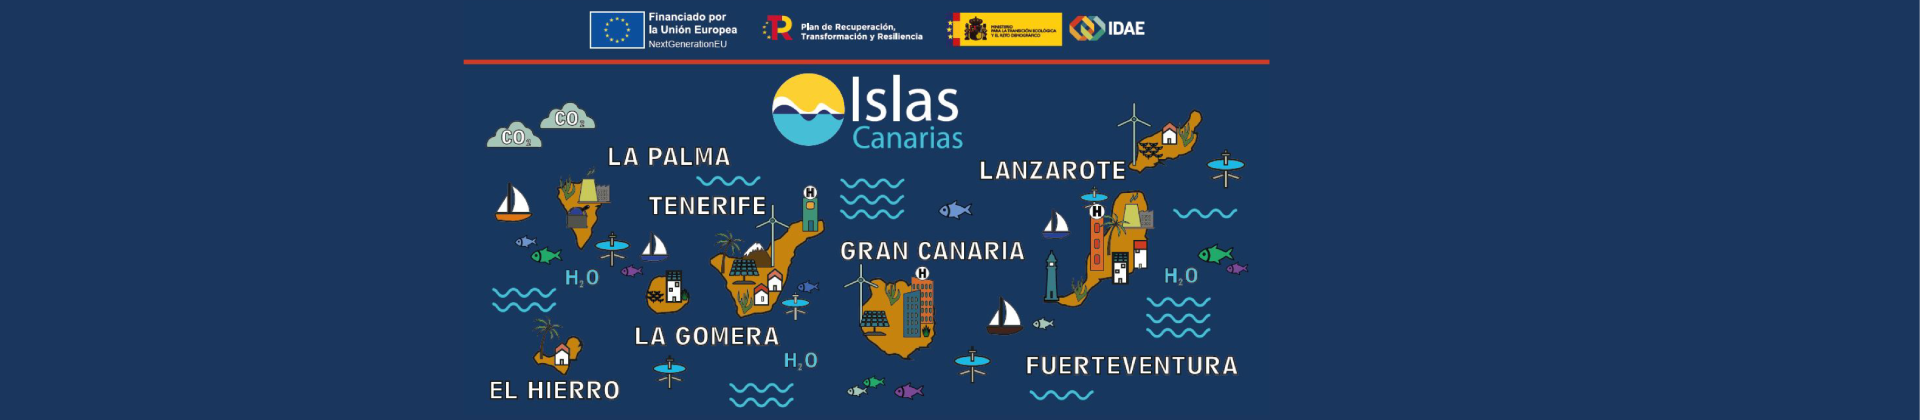 Impulsar la transición energética en el sector hotelero de Canarias - Tenerife